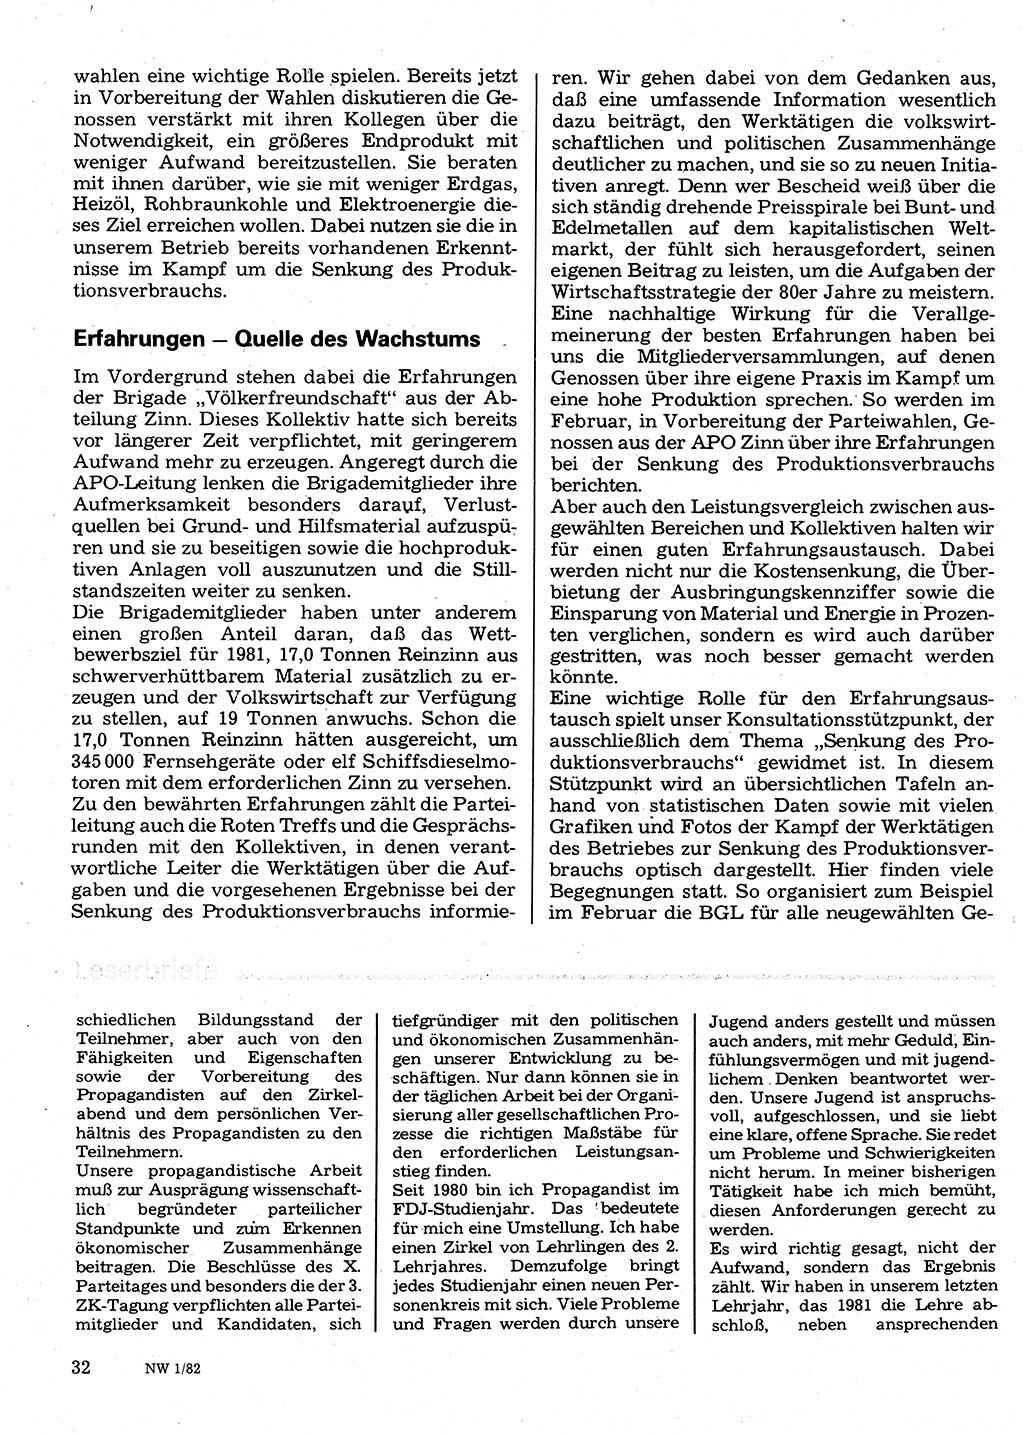 Neuer Weg (NW), Organ des Zentralkomitees (ZK) der SED (Sozialistische Einheitspartei Deutschlands) für Fragen des Parteilebens, 37. Jahrgang [Deutsche Demokratische Republik (DDR)] 1982, Seite 32 (NW ZK SED DDR 1982, S. 32)